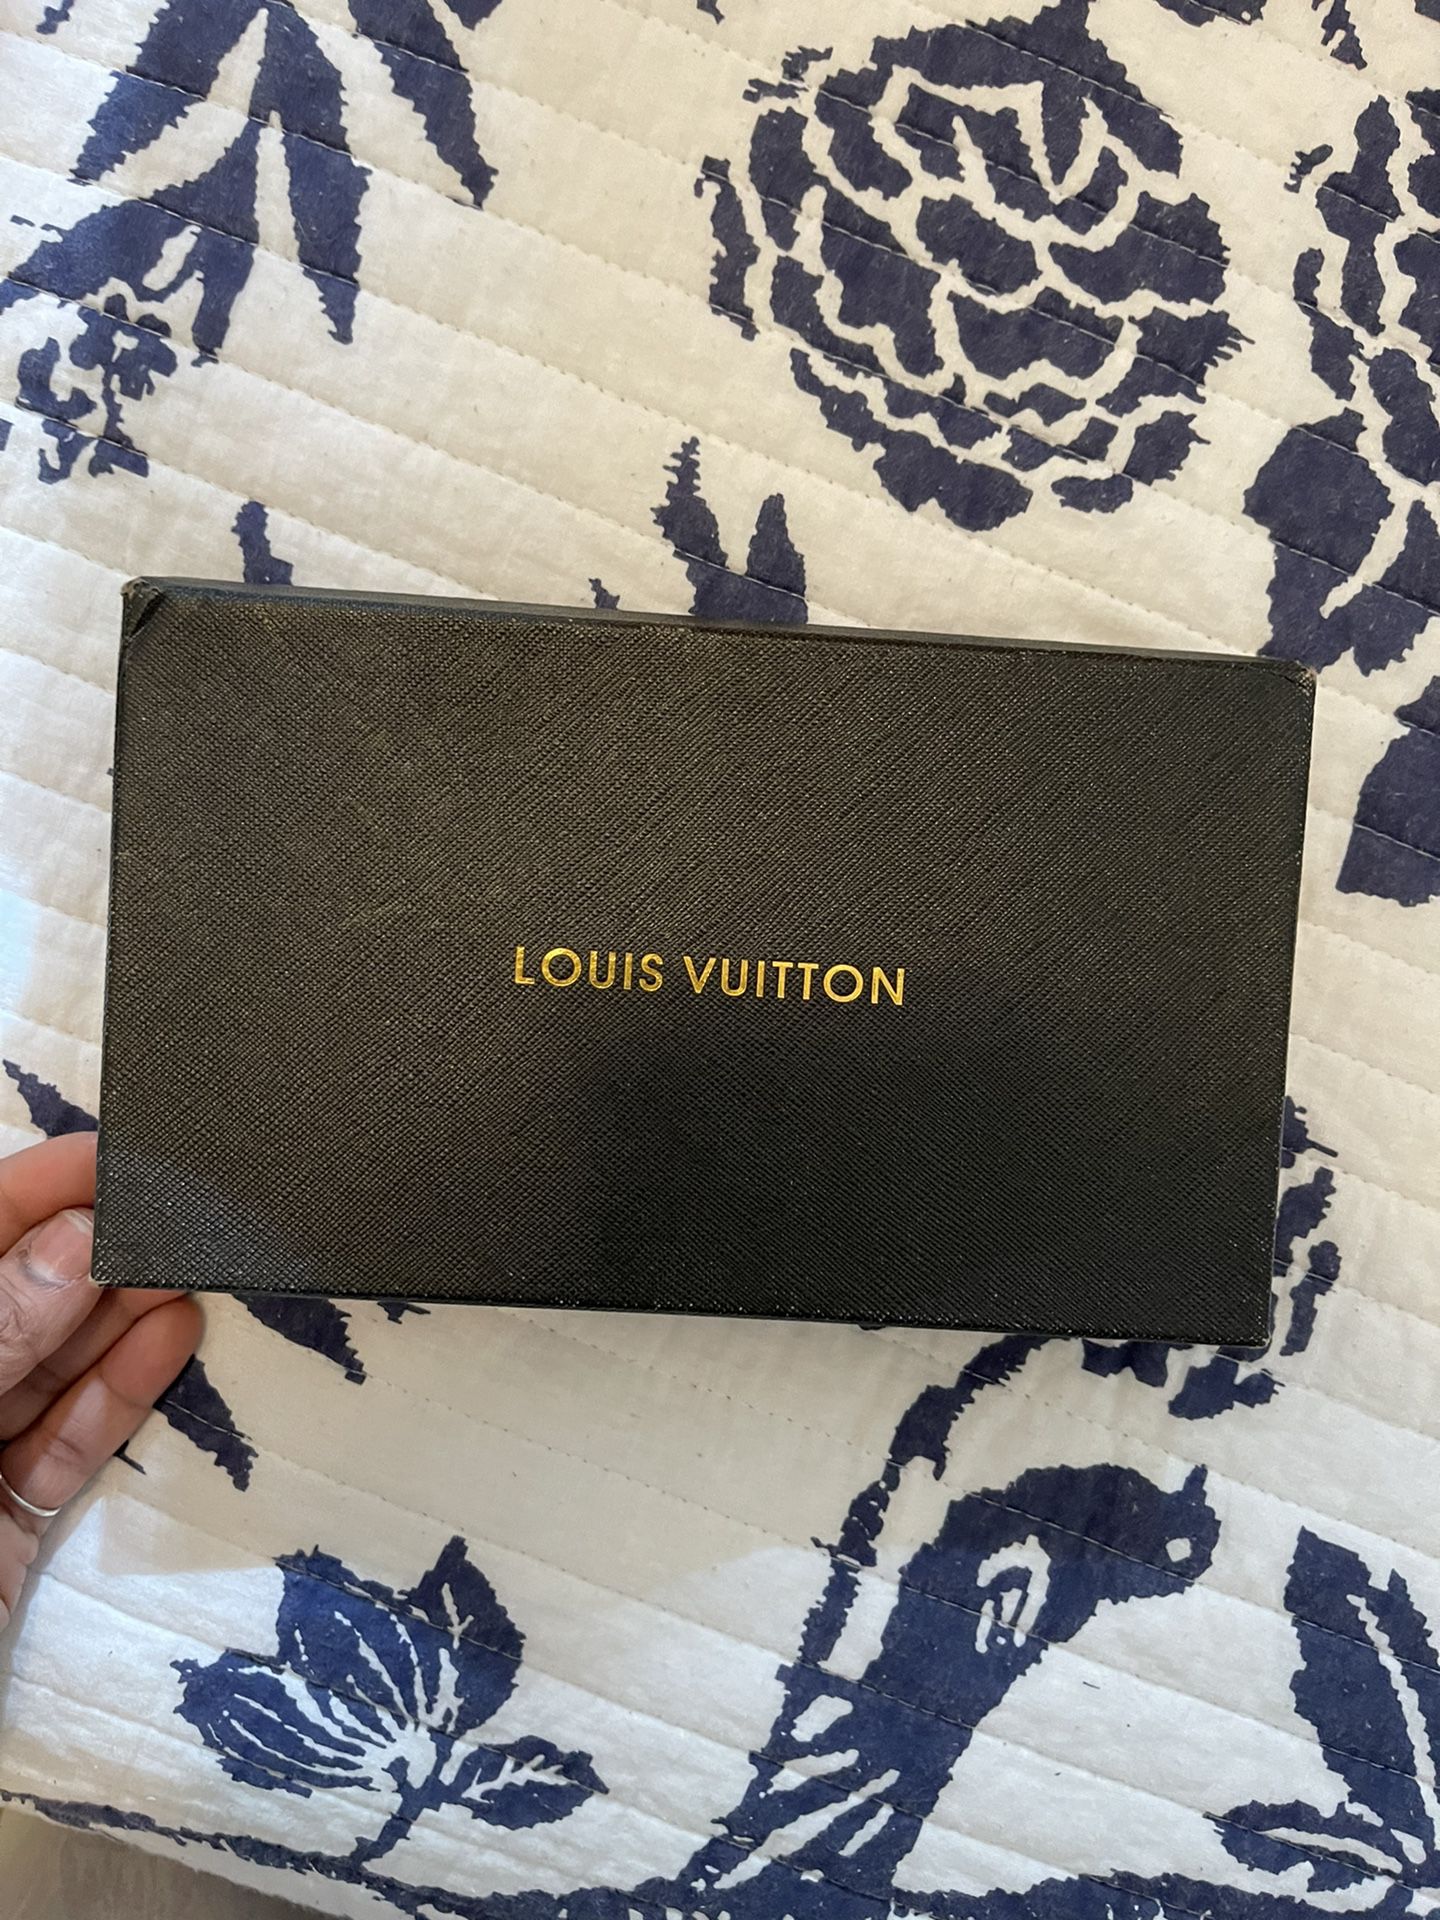 Tan Louis Vuitton Wallet 